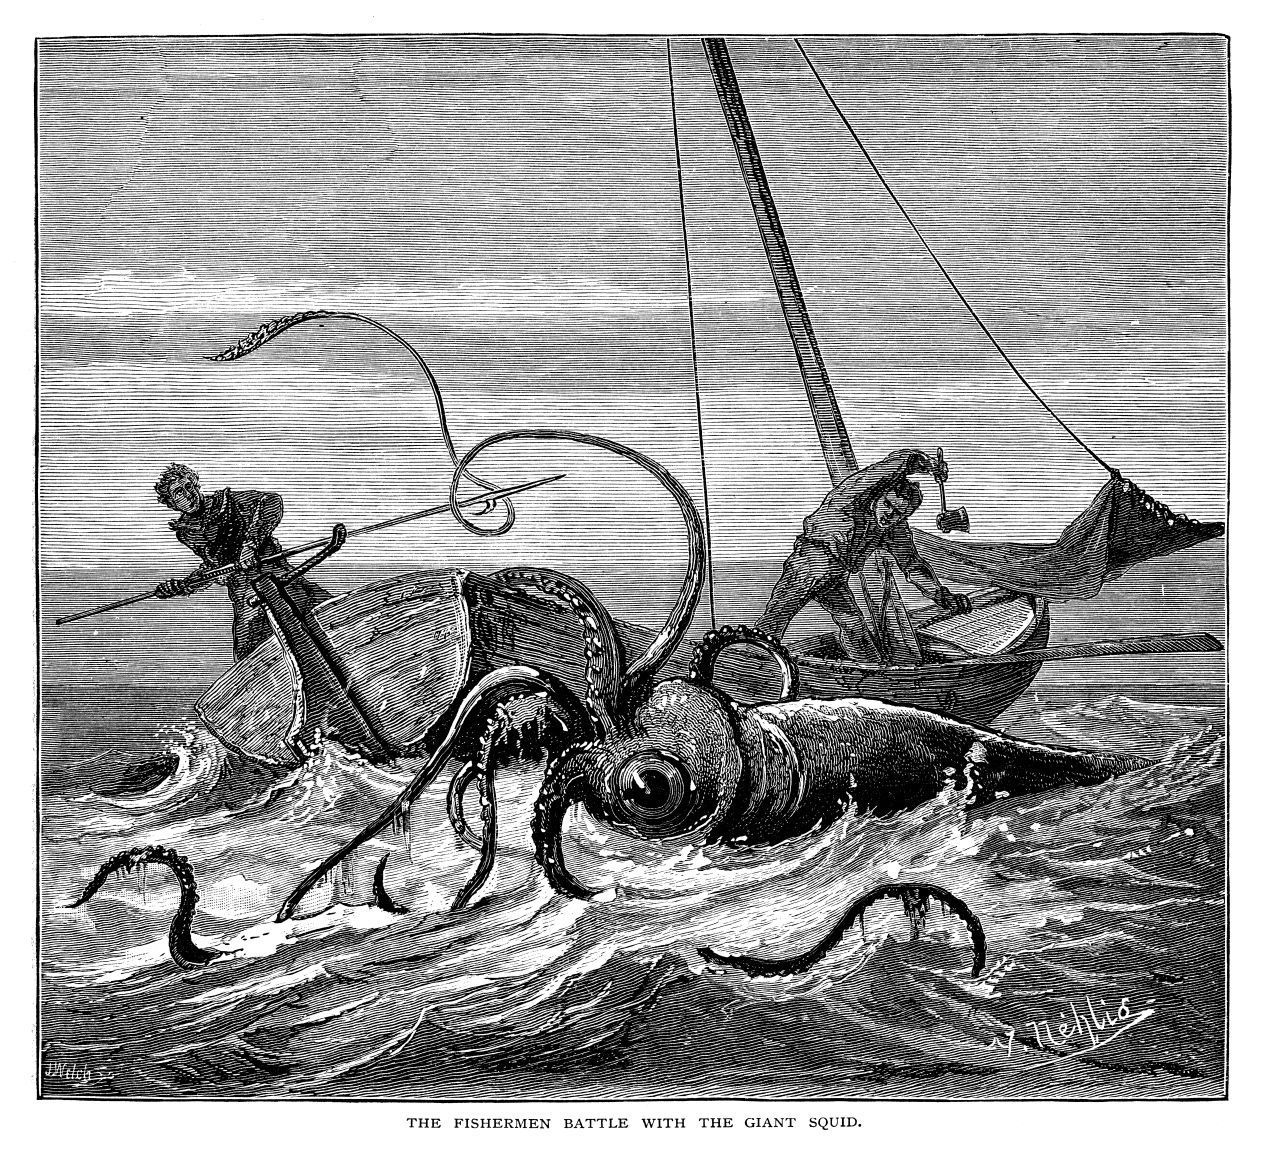 Gigantische Kalmare, die Schiffe versenken, und Seemänner, die sich ihnen im Kampf stellen - solche historischen Gemälde wie dieses aus dem Jahr 1881 gibt es viele. 